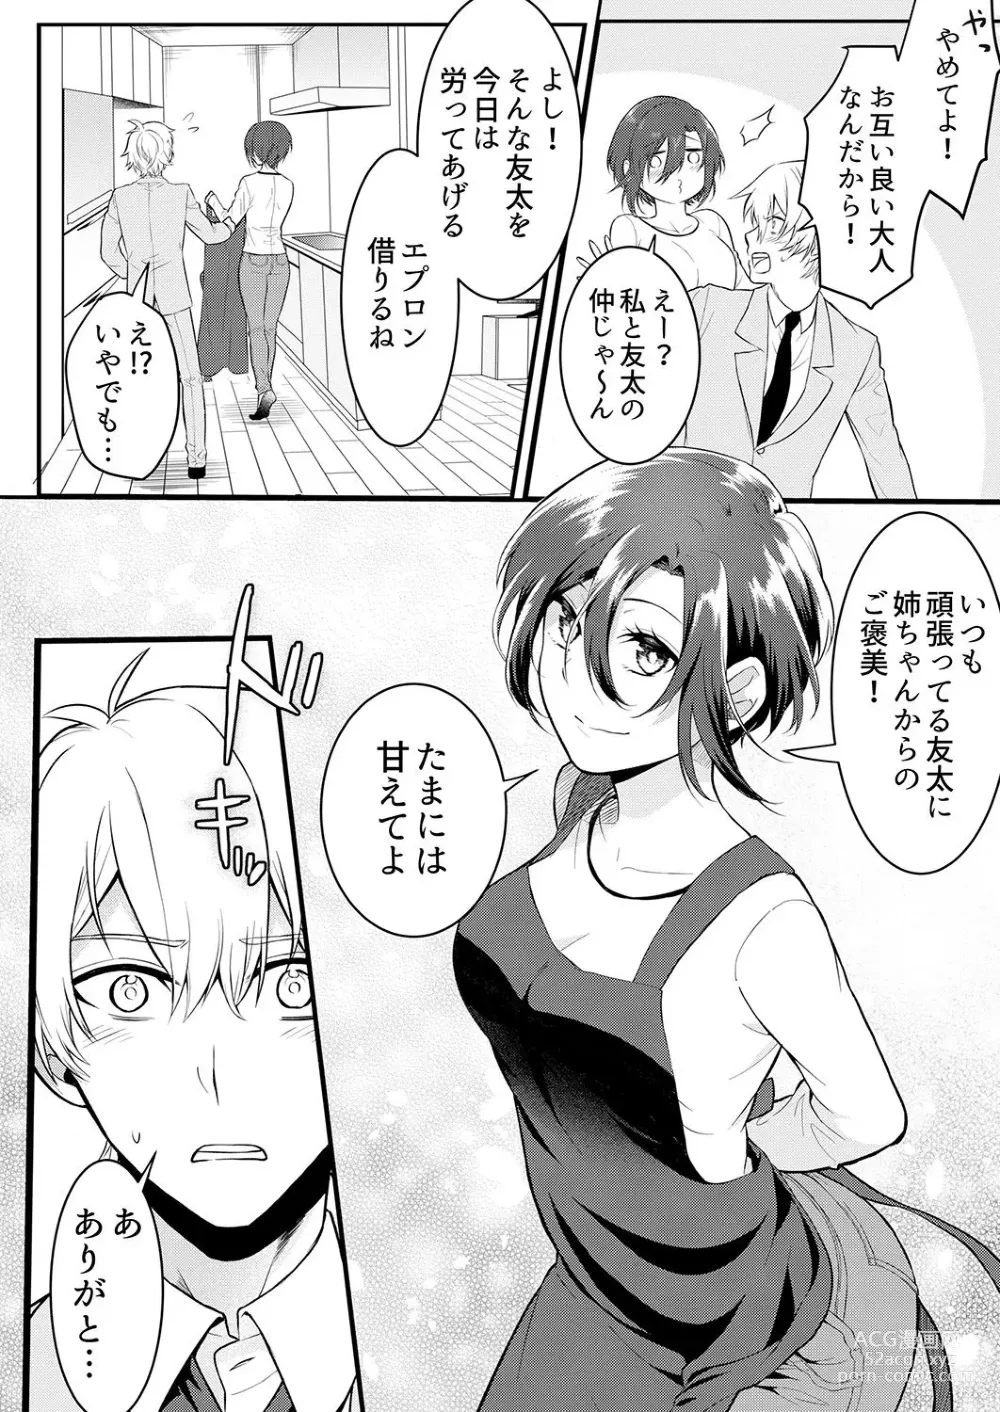 Page 6 of manga Hageshii SEX de Motokare o Wasuresasete ~ Yotta Furi shite Izanau Ane